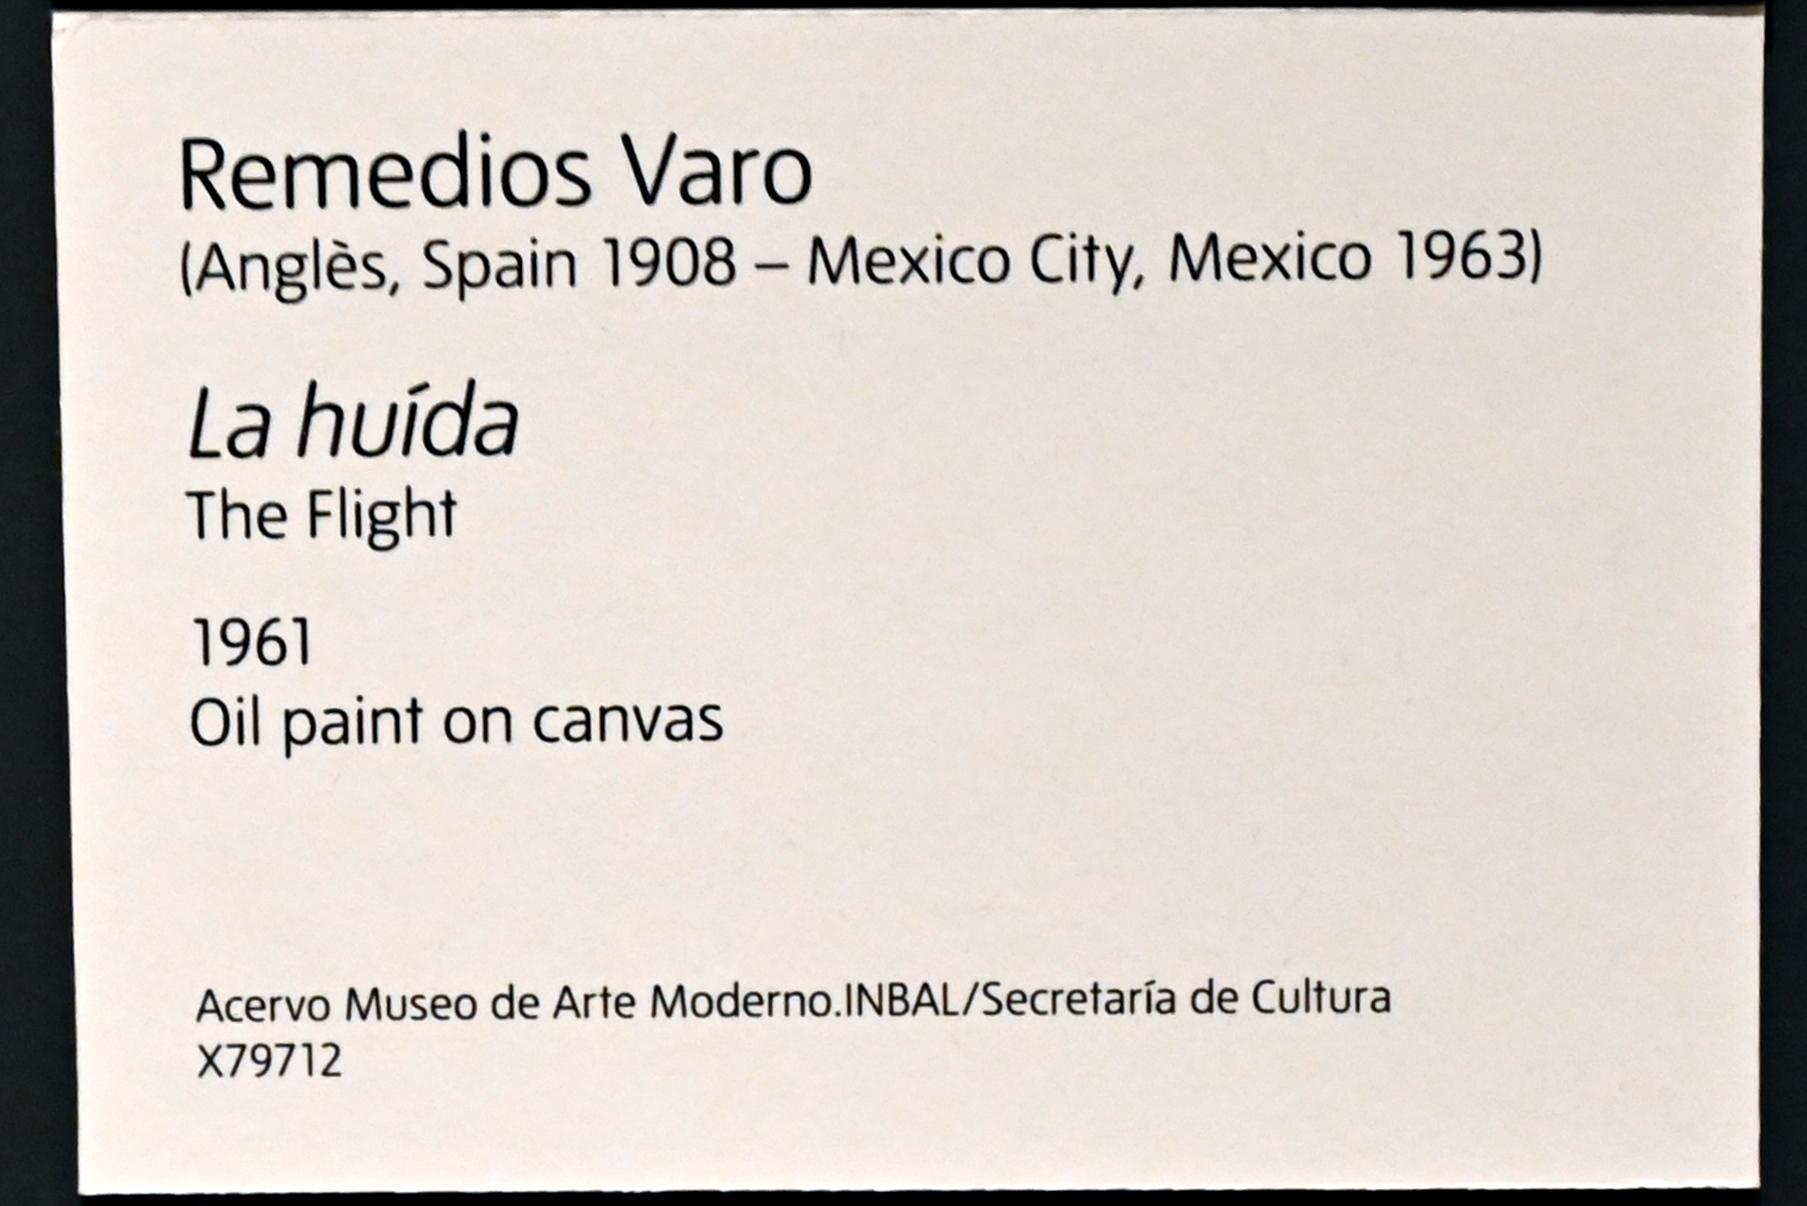 Remedios Varo (1956–1961), Der Flug, London, Tate Modern, Ausstellung "Surrealism Beyond Borders" vom 24.02.-29.08.2022, Saal 10, 1961, Bild 2/3